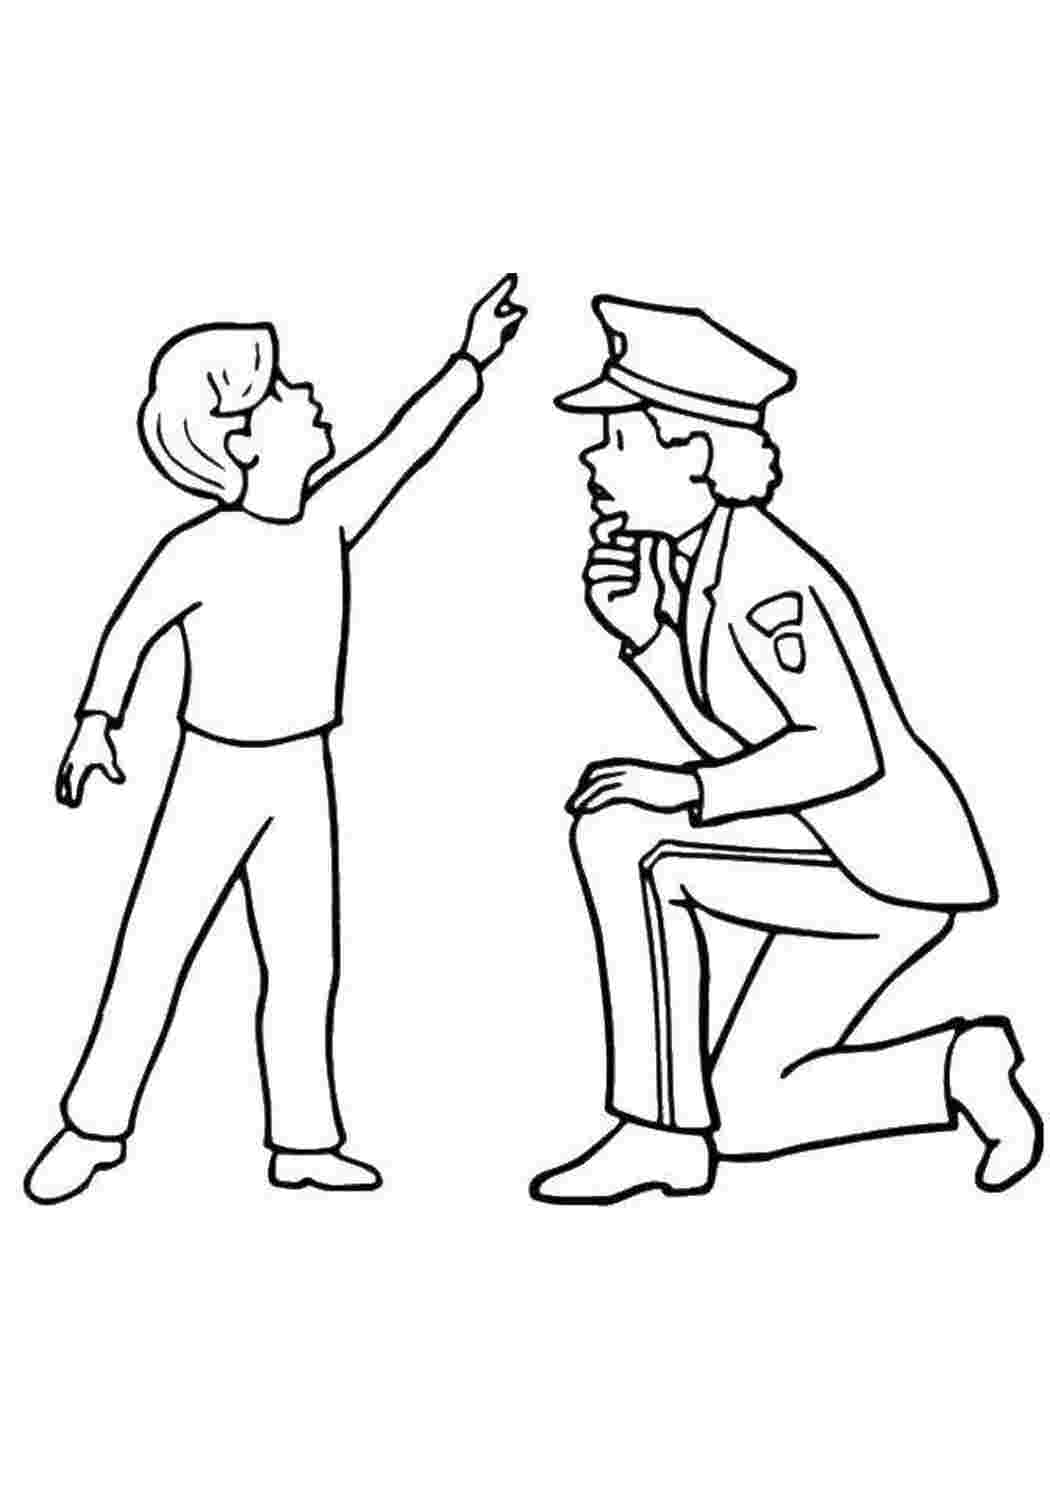 В Приморье выбрали лучший рисунок на тему службы в полиции